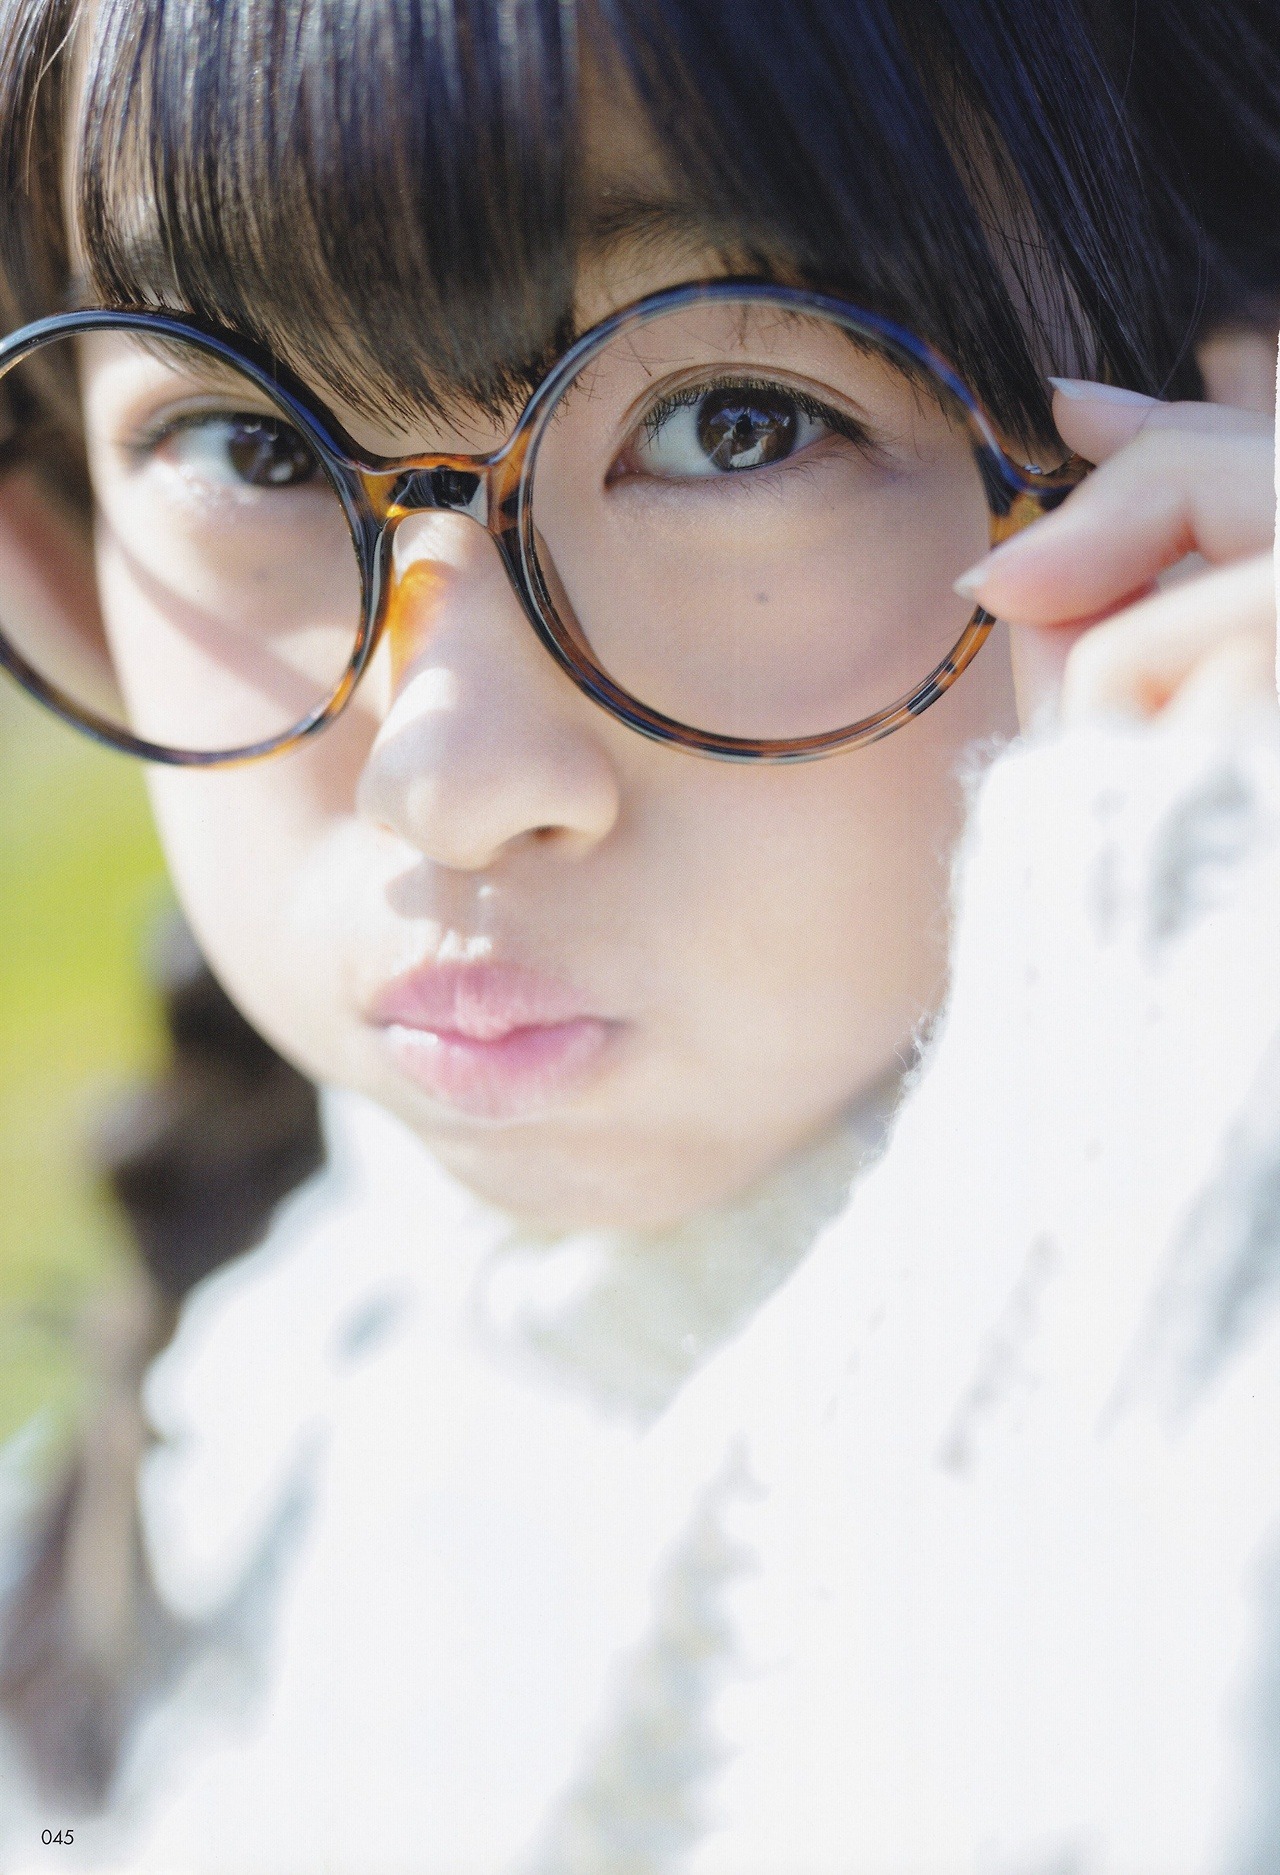 べっ甲の丸い大きなメガネをかけている原田葵の画像